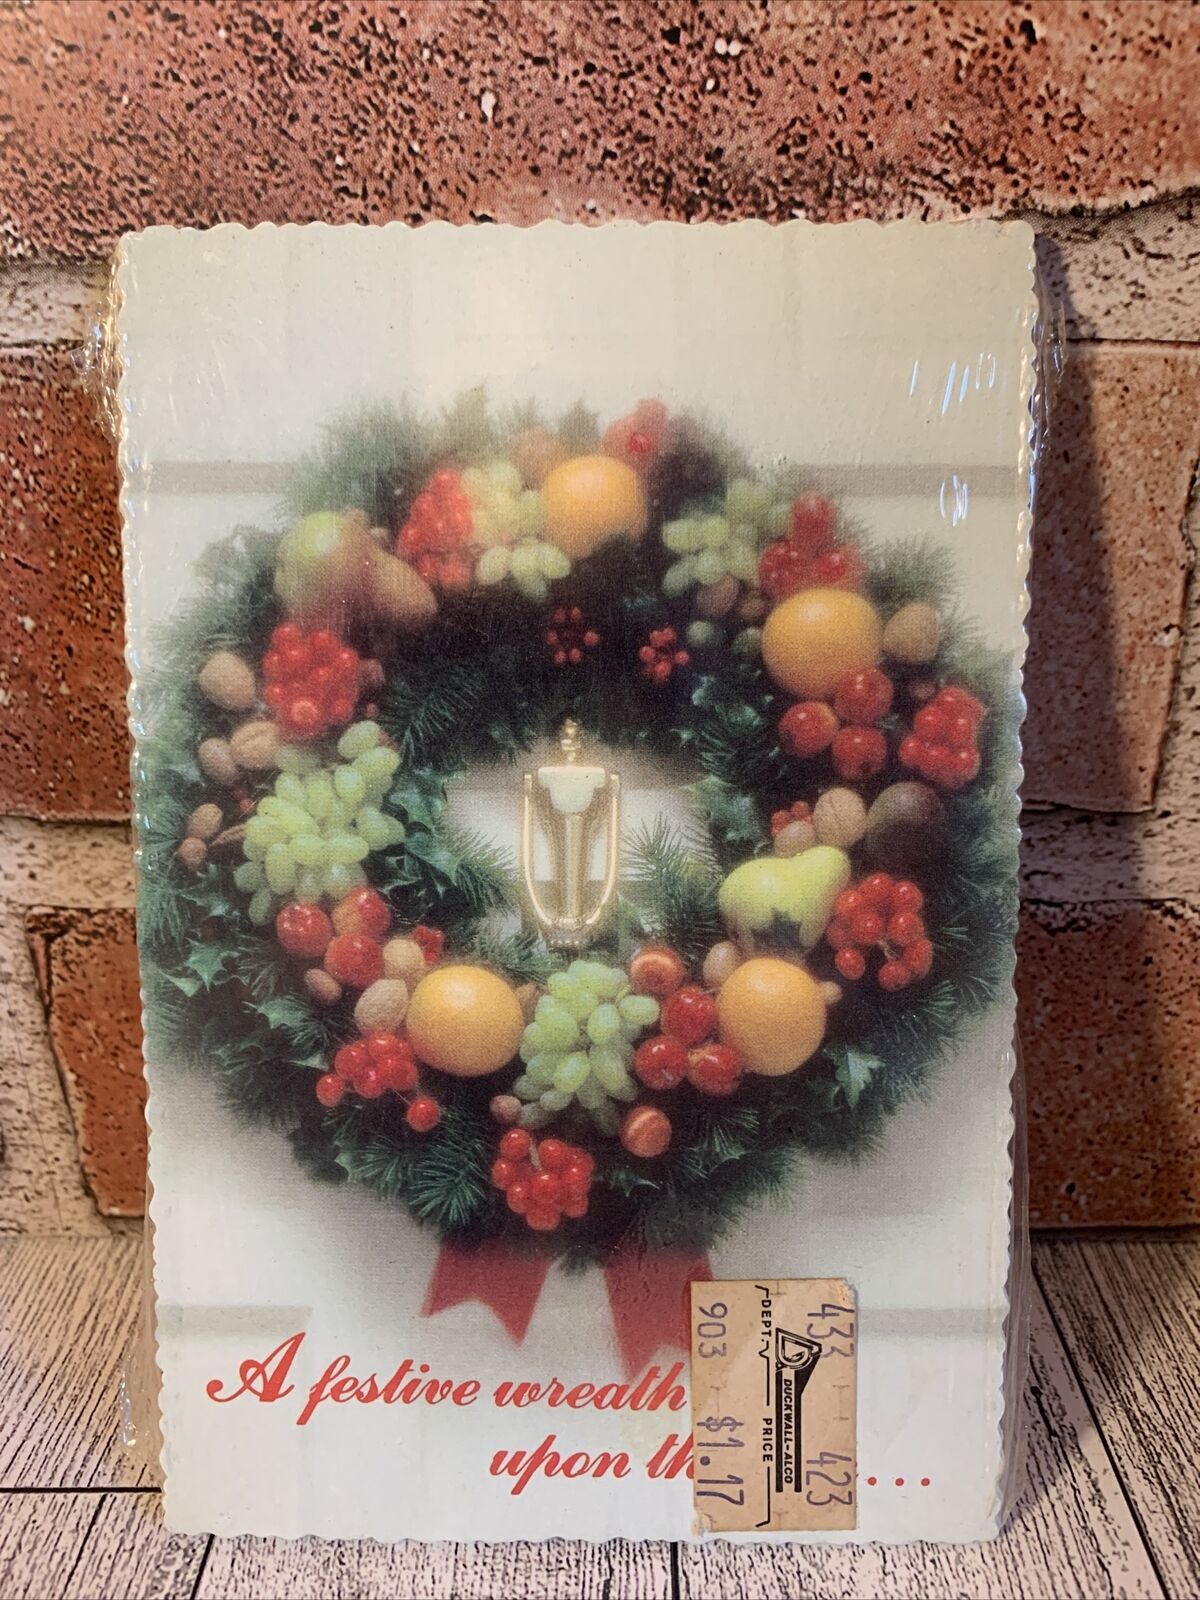 VTG GRAND AWARD Christmas Originals Postcards 15 Christmas Holiday Wreath New